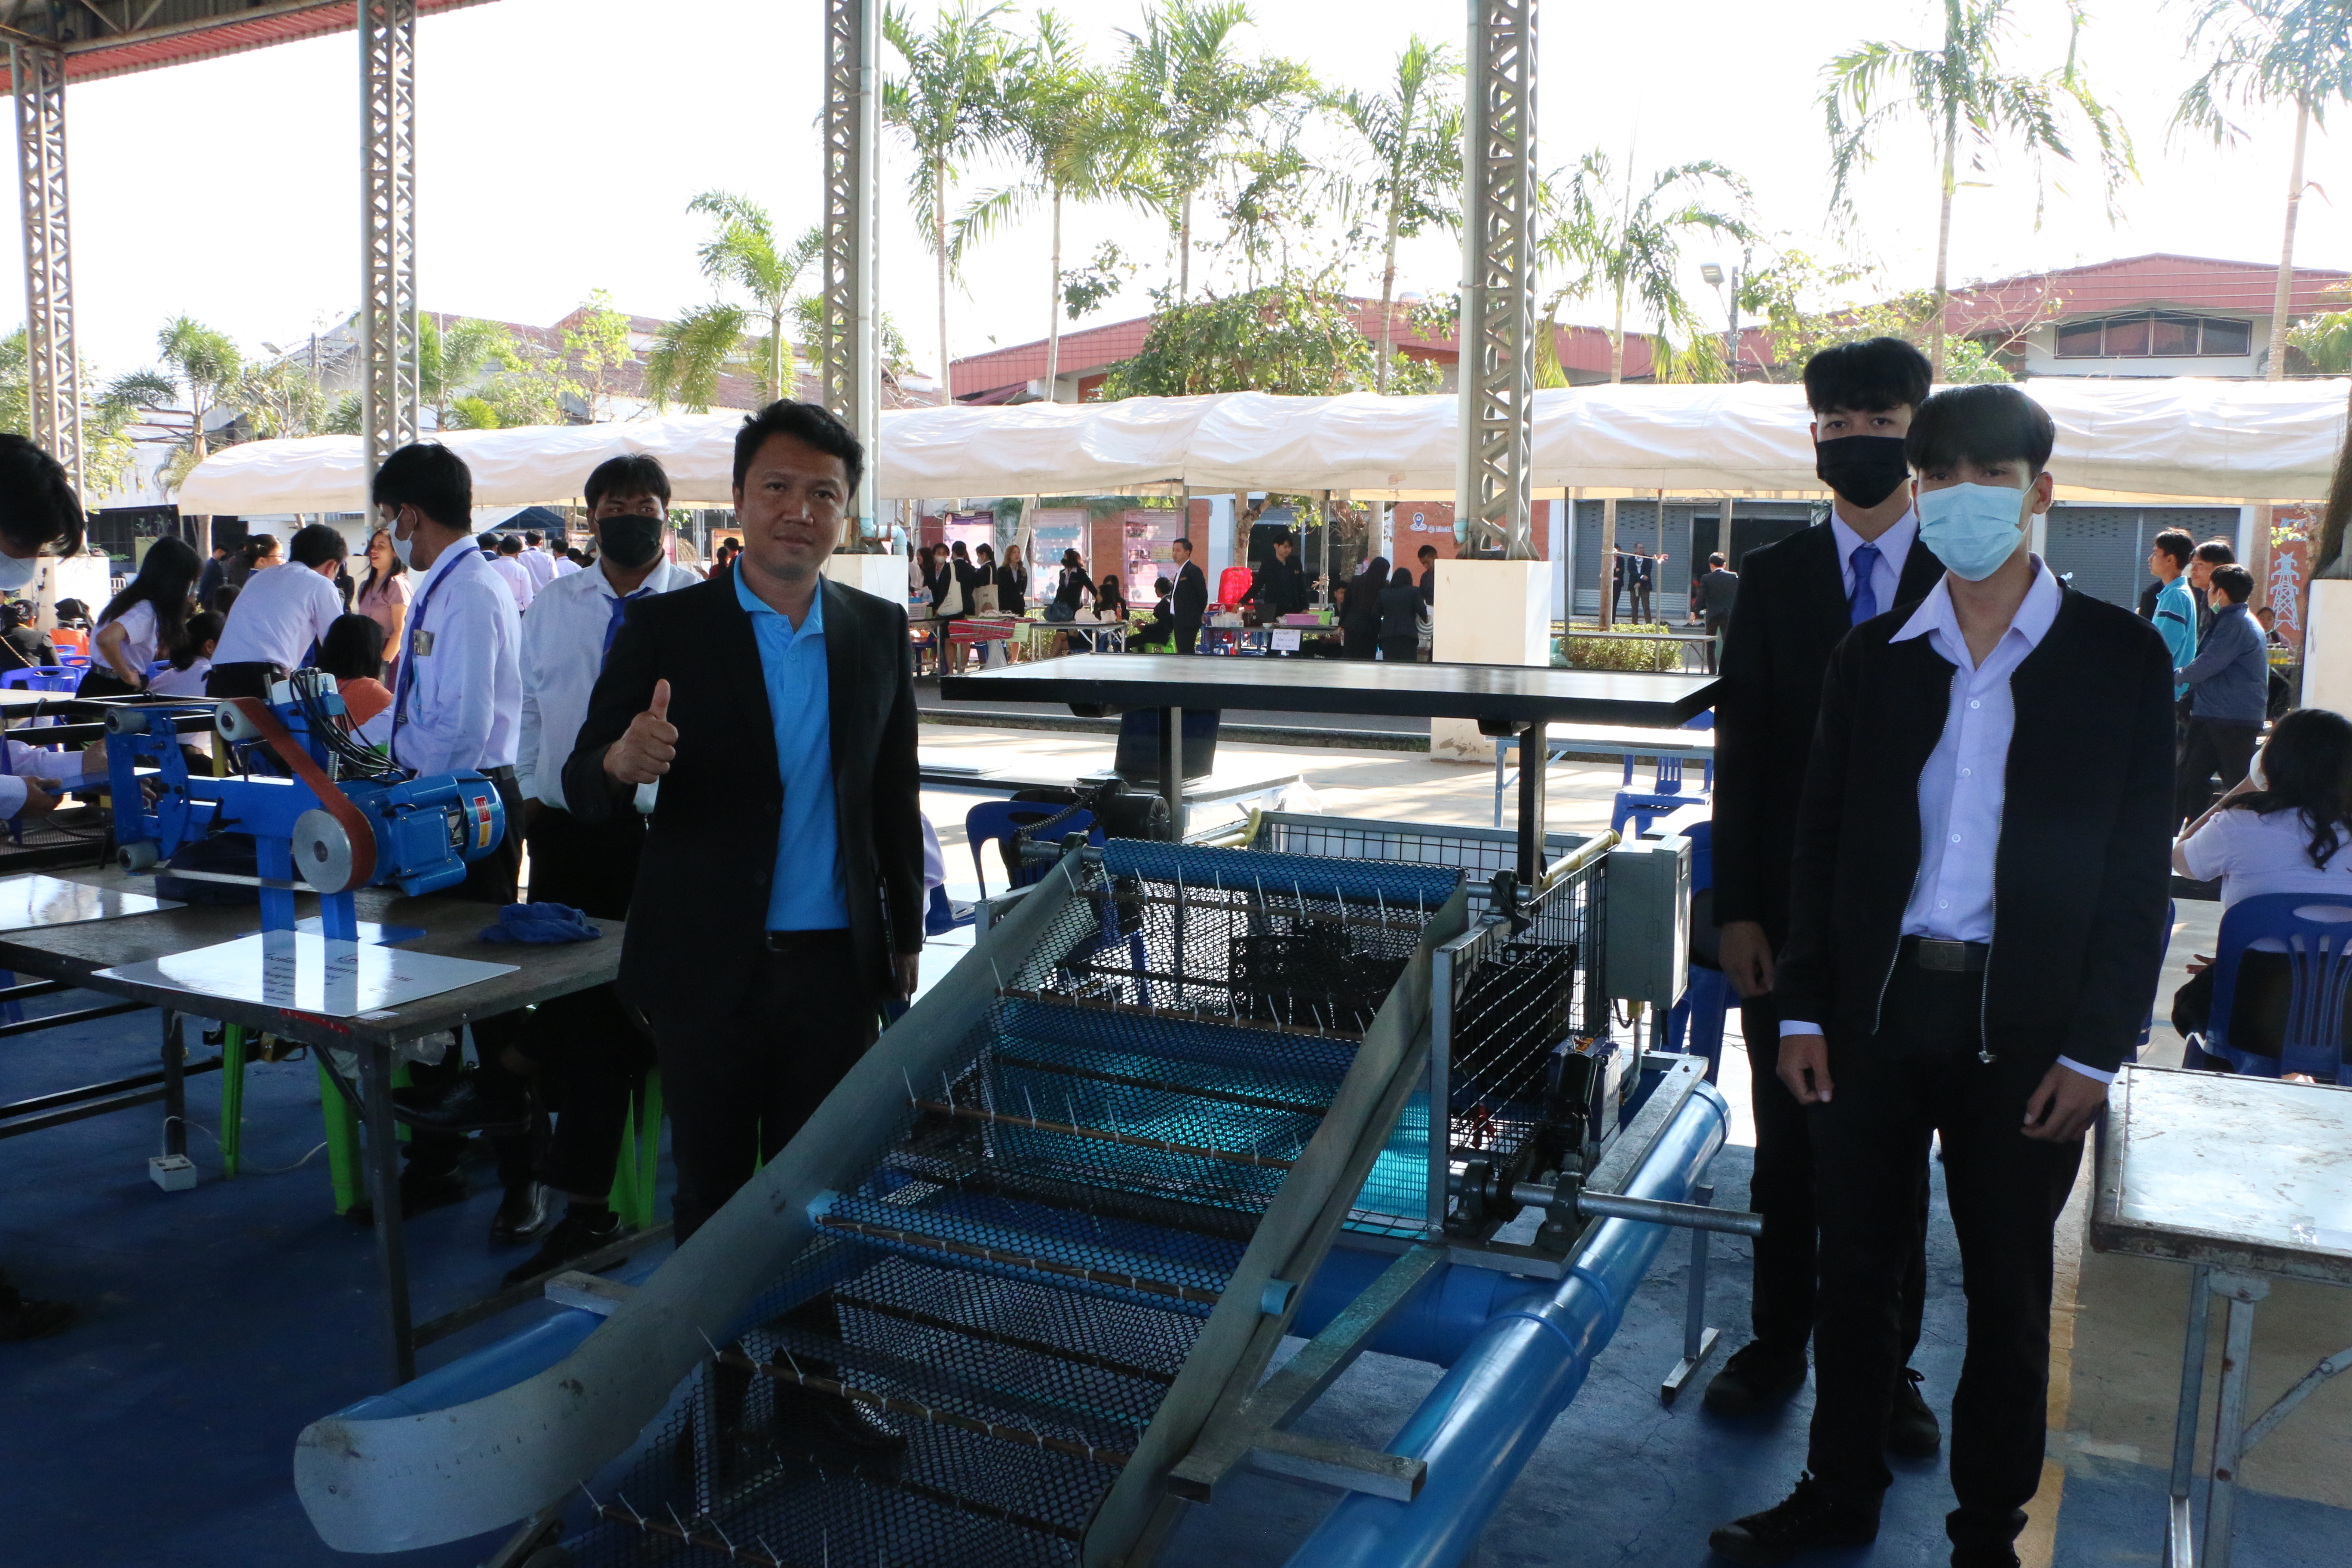 วิทยาลัยธาตุพนม ม.นครพนม จัดประกวดสิ่งประดิษฐ์ นวัตกรรม สานสัมพันธ์ลุ่มน้ำโขง ครั้งที่ 8